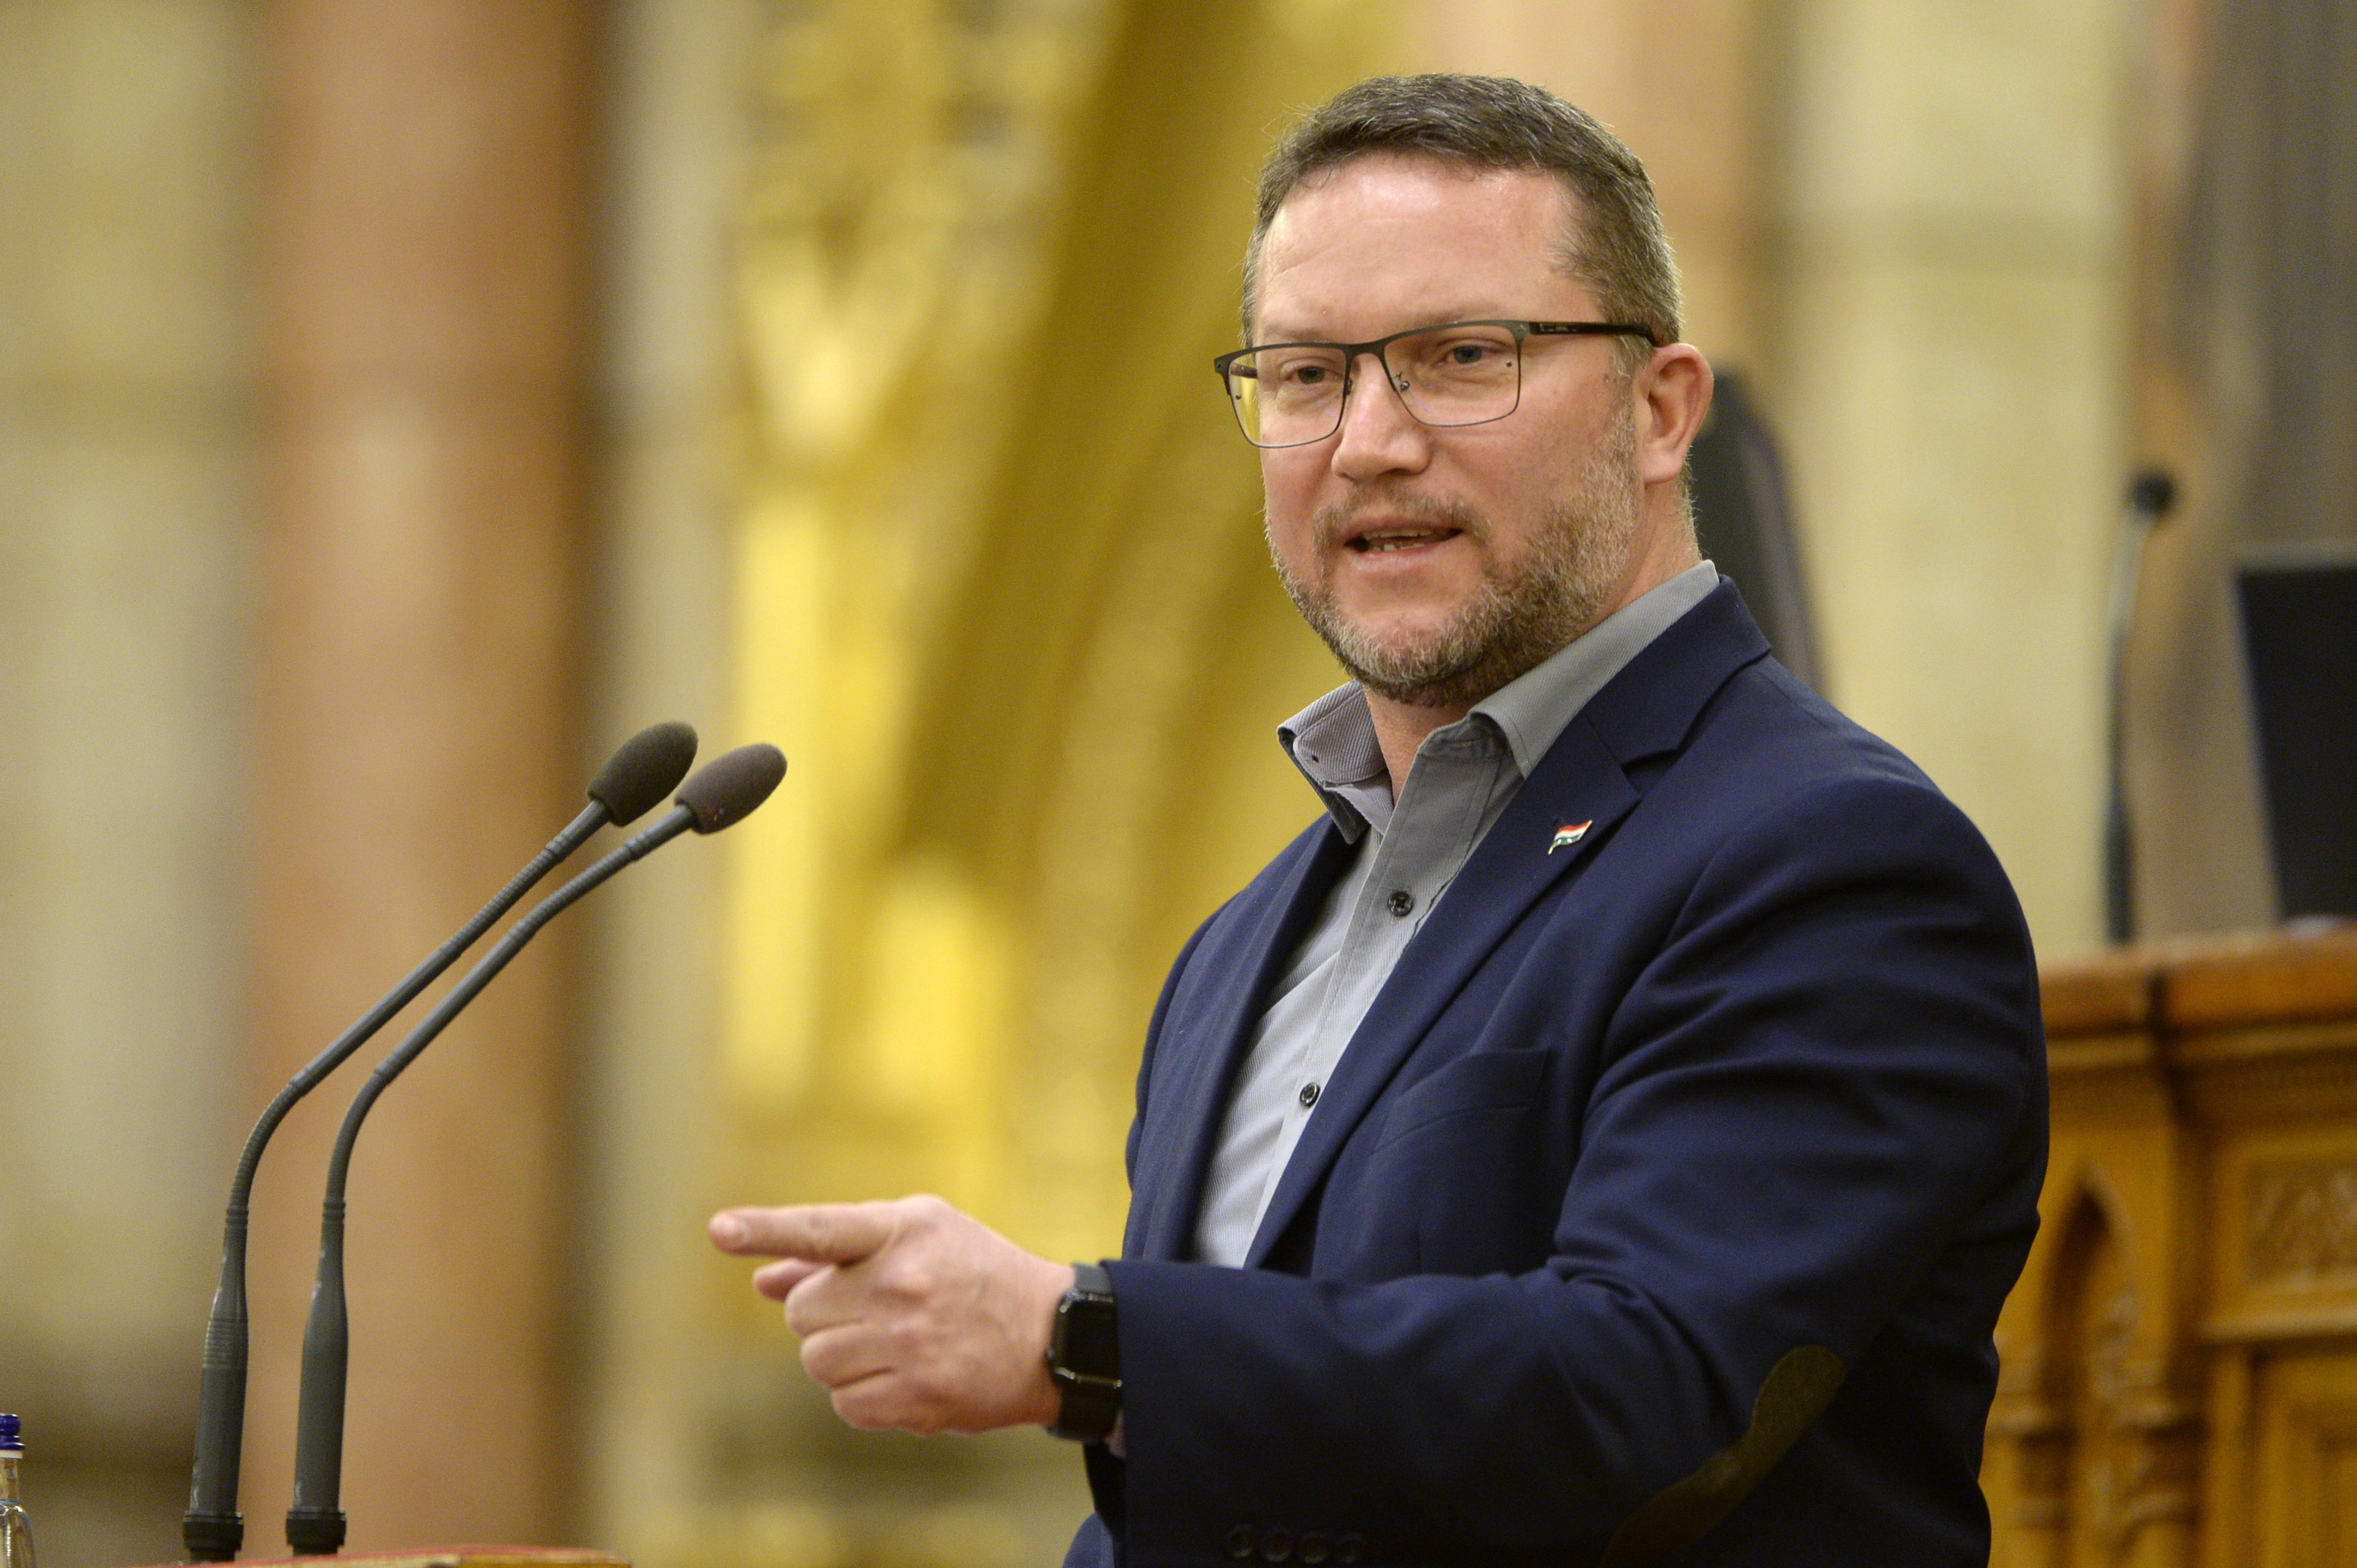 Ujhelyi István bejelentkezett az MSZP, vagyis az elképzelt új szociáldemokrata párt vezetésére